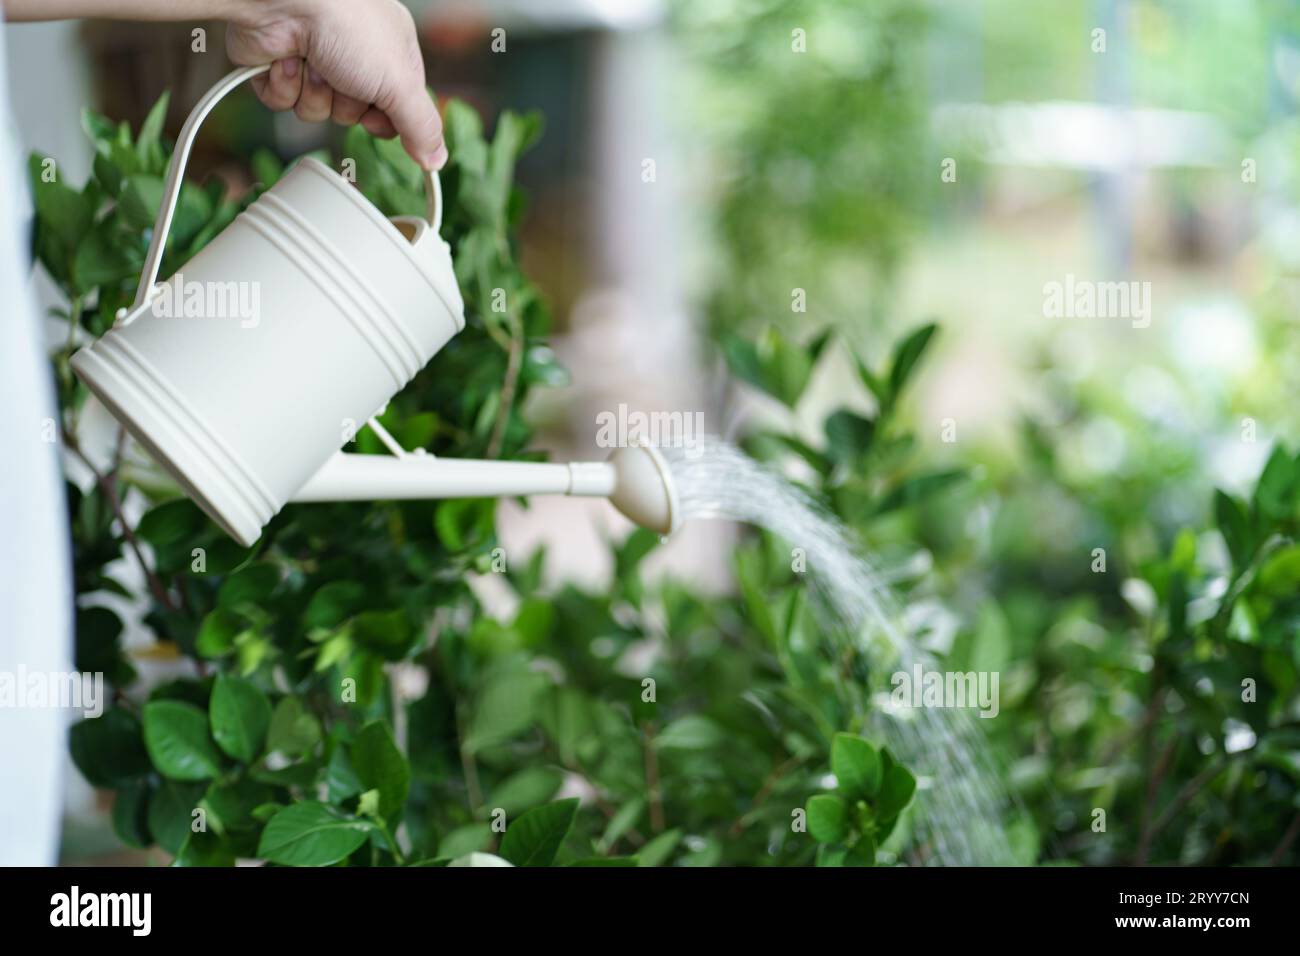 Mann, der plantsÂ in seinem Garten tränkt. Urbane Gartenbewässerung Frischgemüse Natur- und Pflanzenpflegekonzept Stockfoto